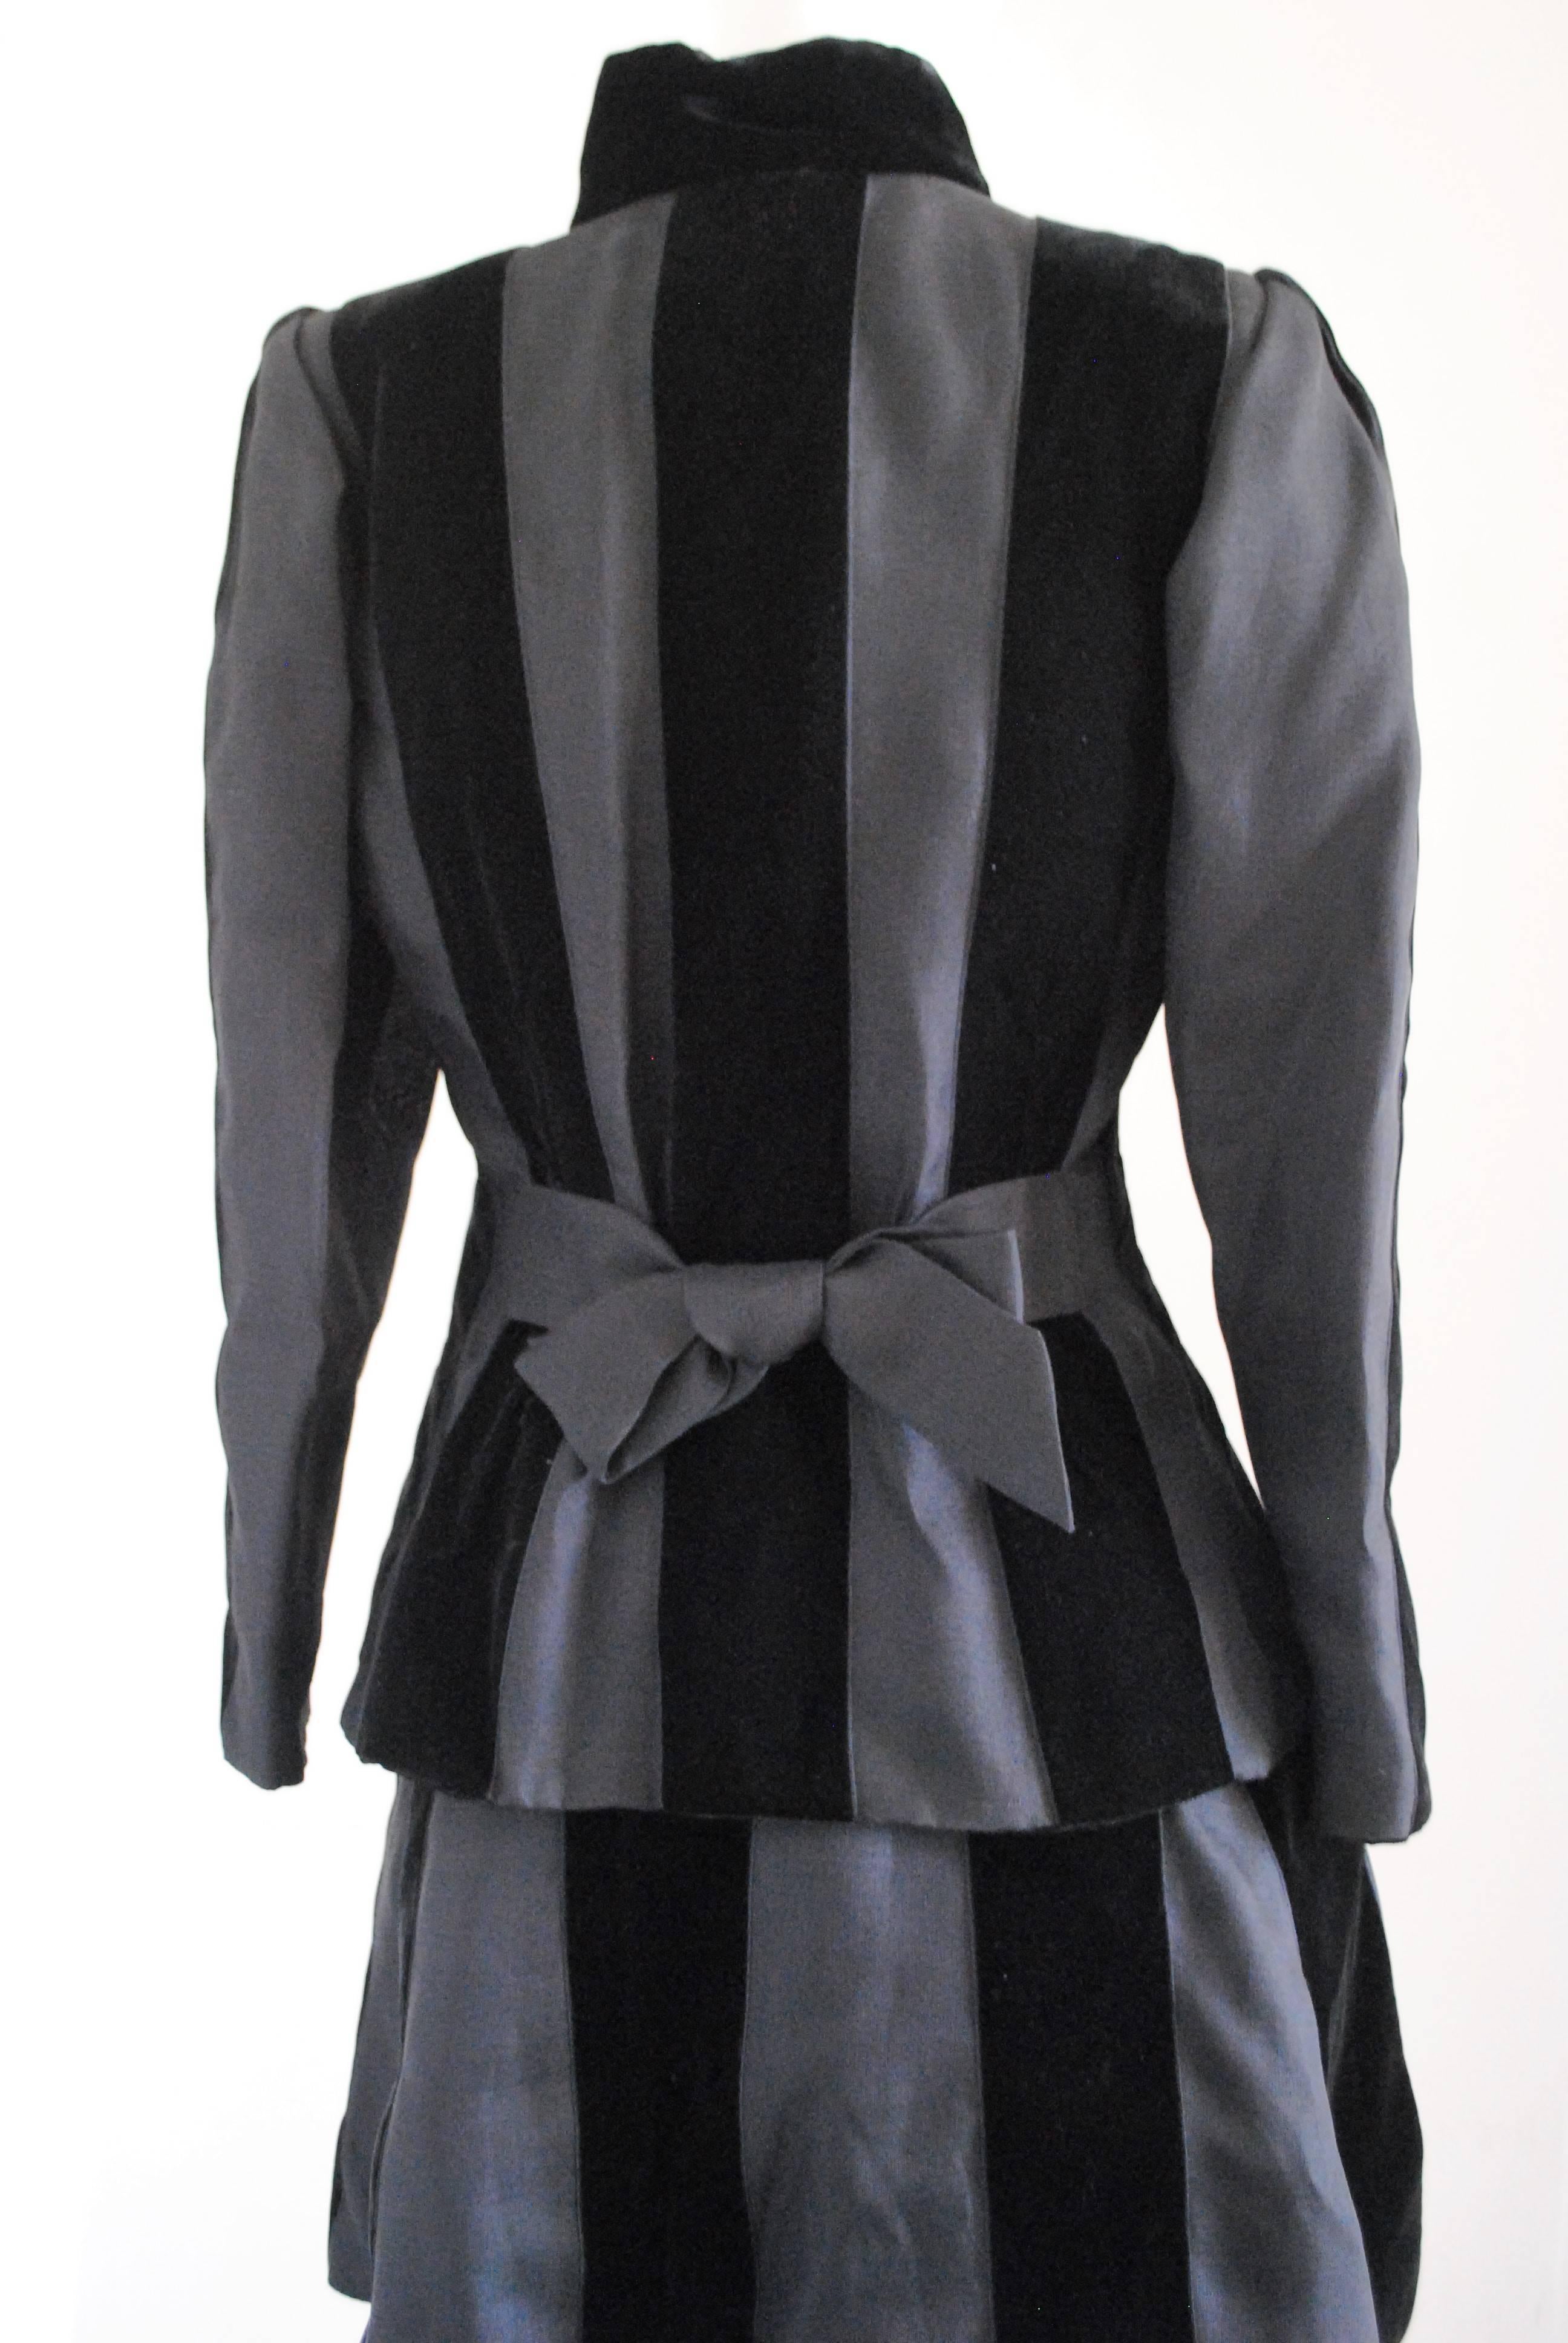 Yves Saint Laurent Rive Gauche Skirt Suit 1